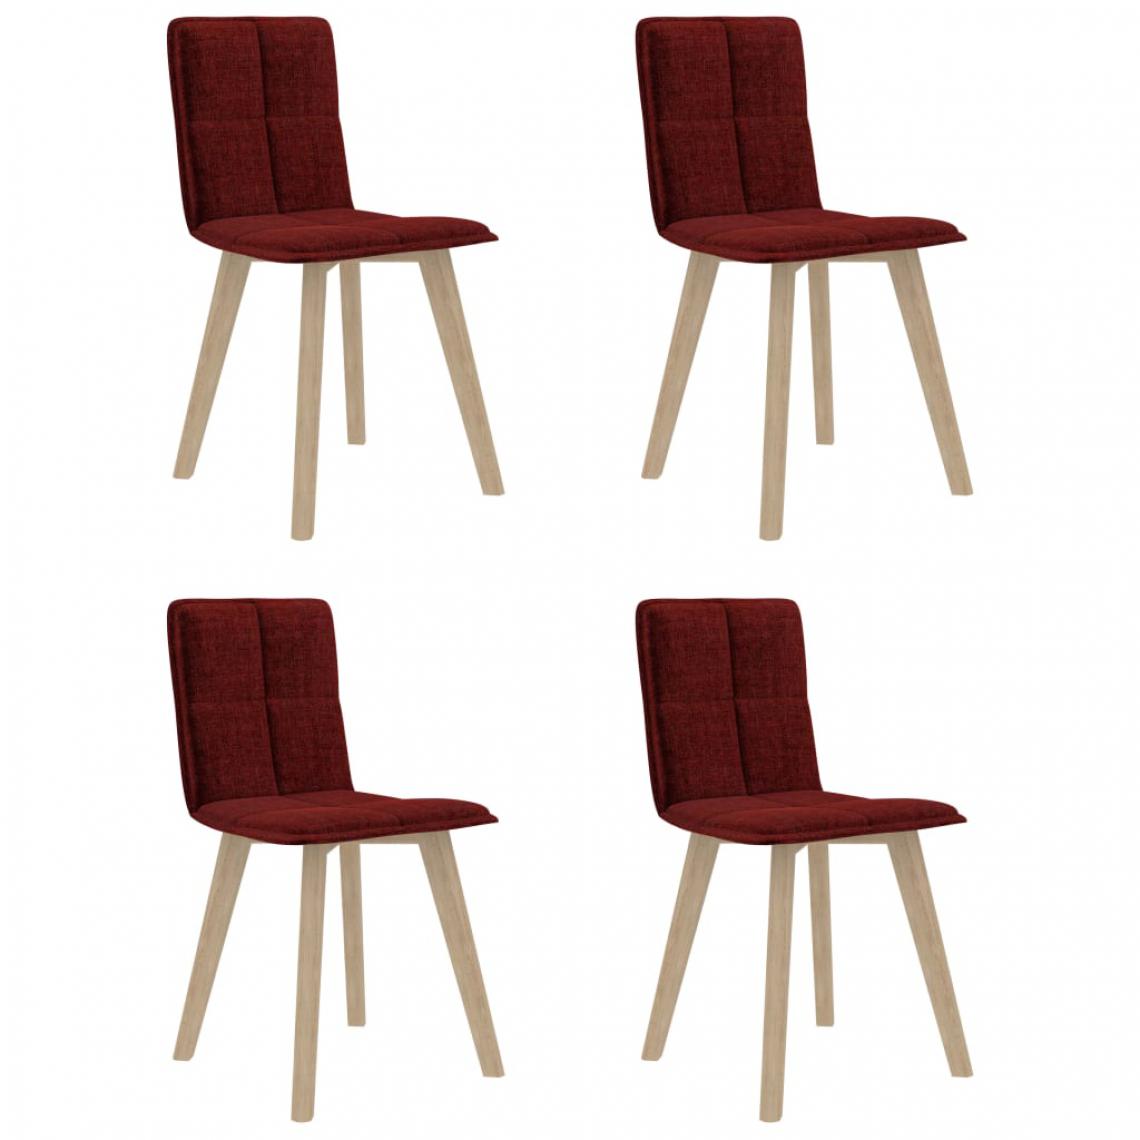 Icaverne - Superbe Fauteuils et chaises categorie Dakar Chaises de salle à manger 4 pcs Rouge bordeaux Tissu - Chaises